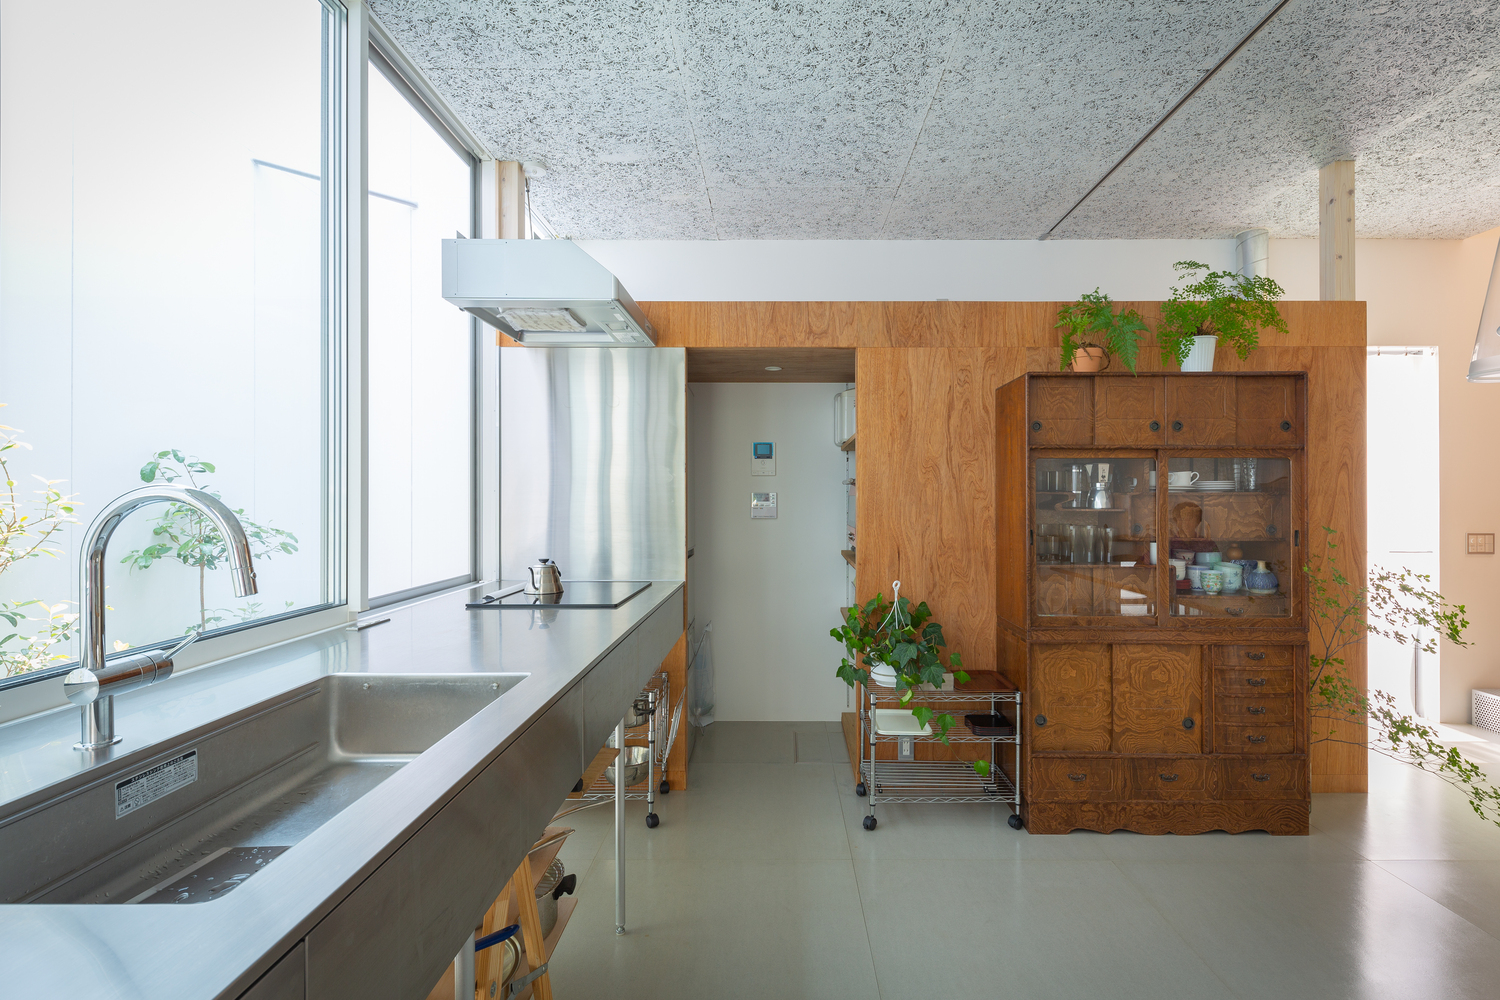 Với cửa sổ kính thay thế cả mảng tường lớn, không gian phòng bếp ngập tràn ánh sáng.